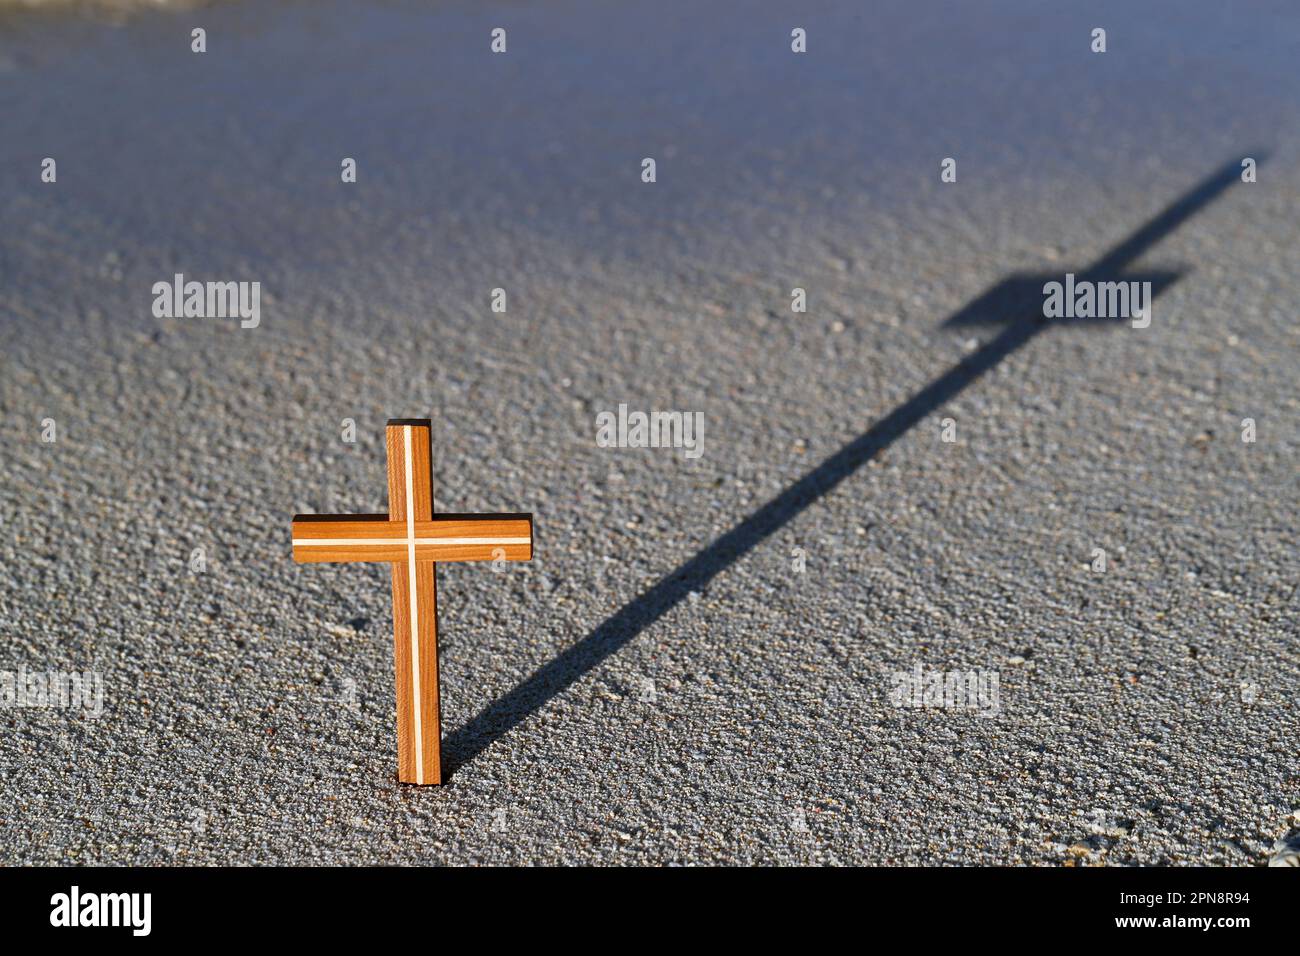 Una croce di legno nella sabbia con ombra. Concetto di religione, fede e spiritualità. Foto Stock